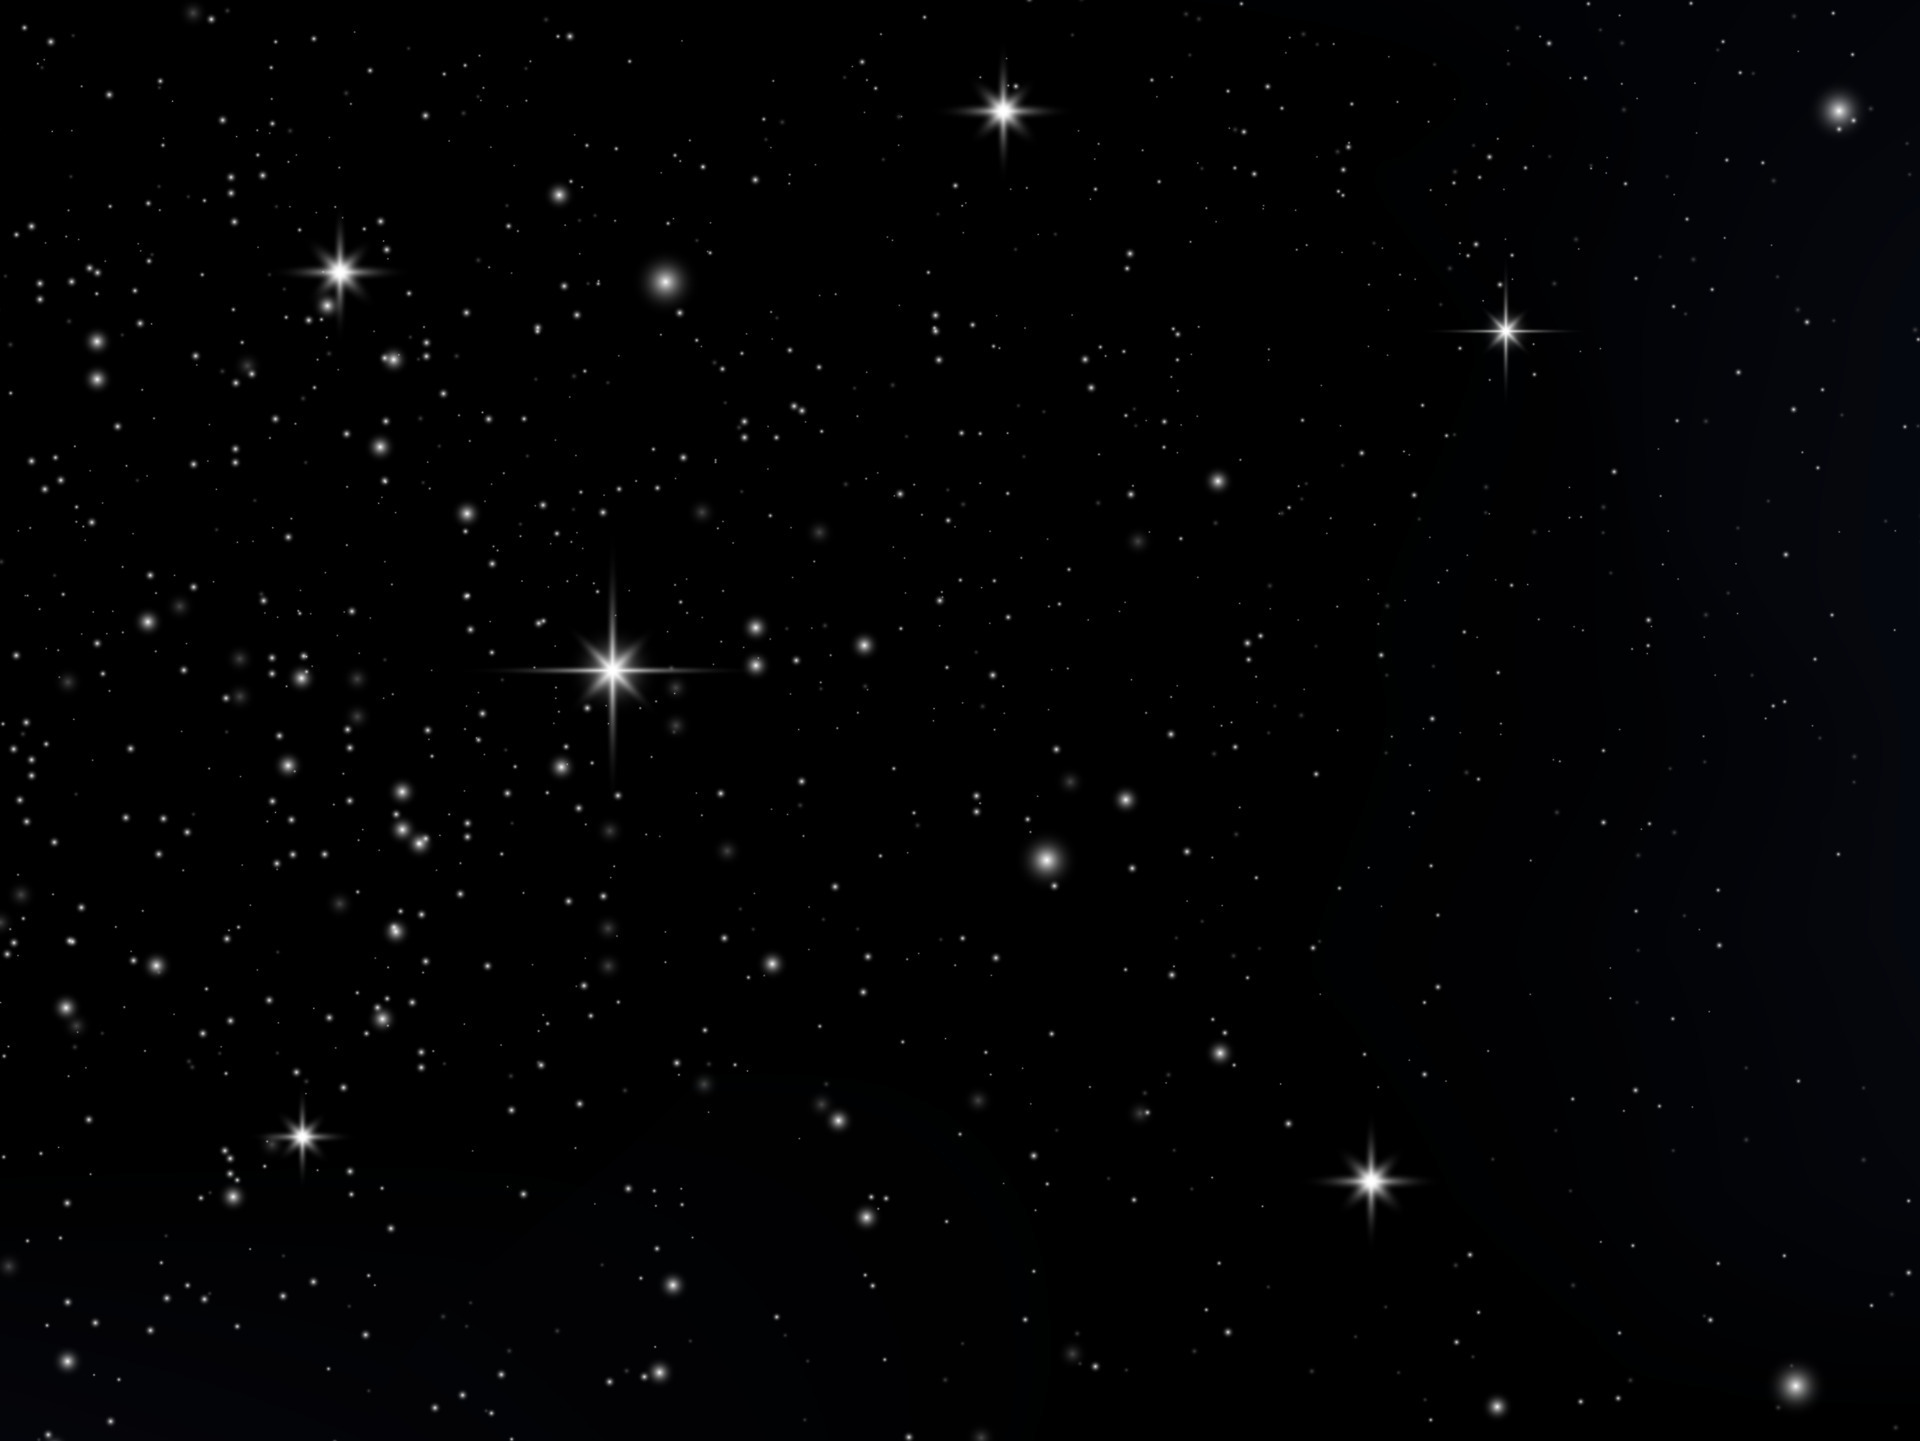 Một hình nền không gian xanh rực rỡ với hàng triệu ngôi sao sẽ khiến bạn trở thành người đầu tiên bước vào chân trời kỳ diệu. Với thiên nhiên đêm đầy sao, bức ảnh sẽ giúp bạn cảm nhận được sự kỳ diệu của bầu trời đêm, tạo cho bạn cảm giác nhẹ nhàng và thong dong.